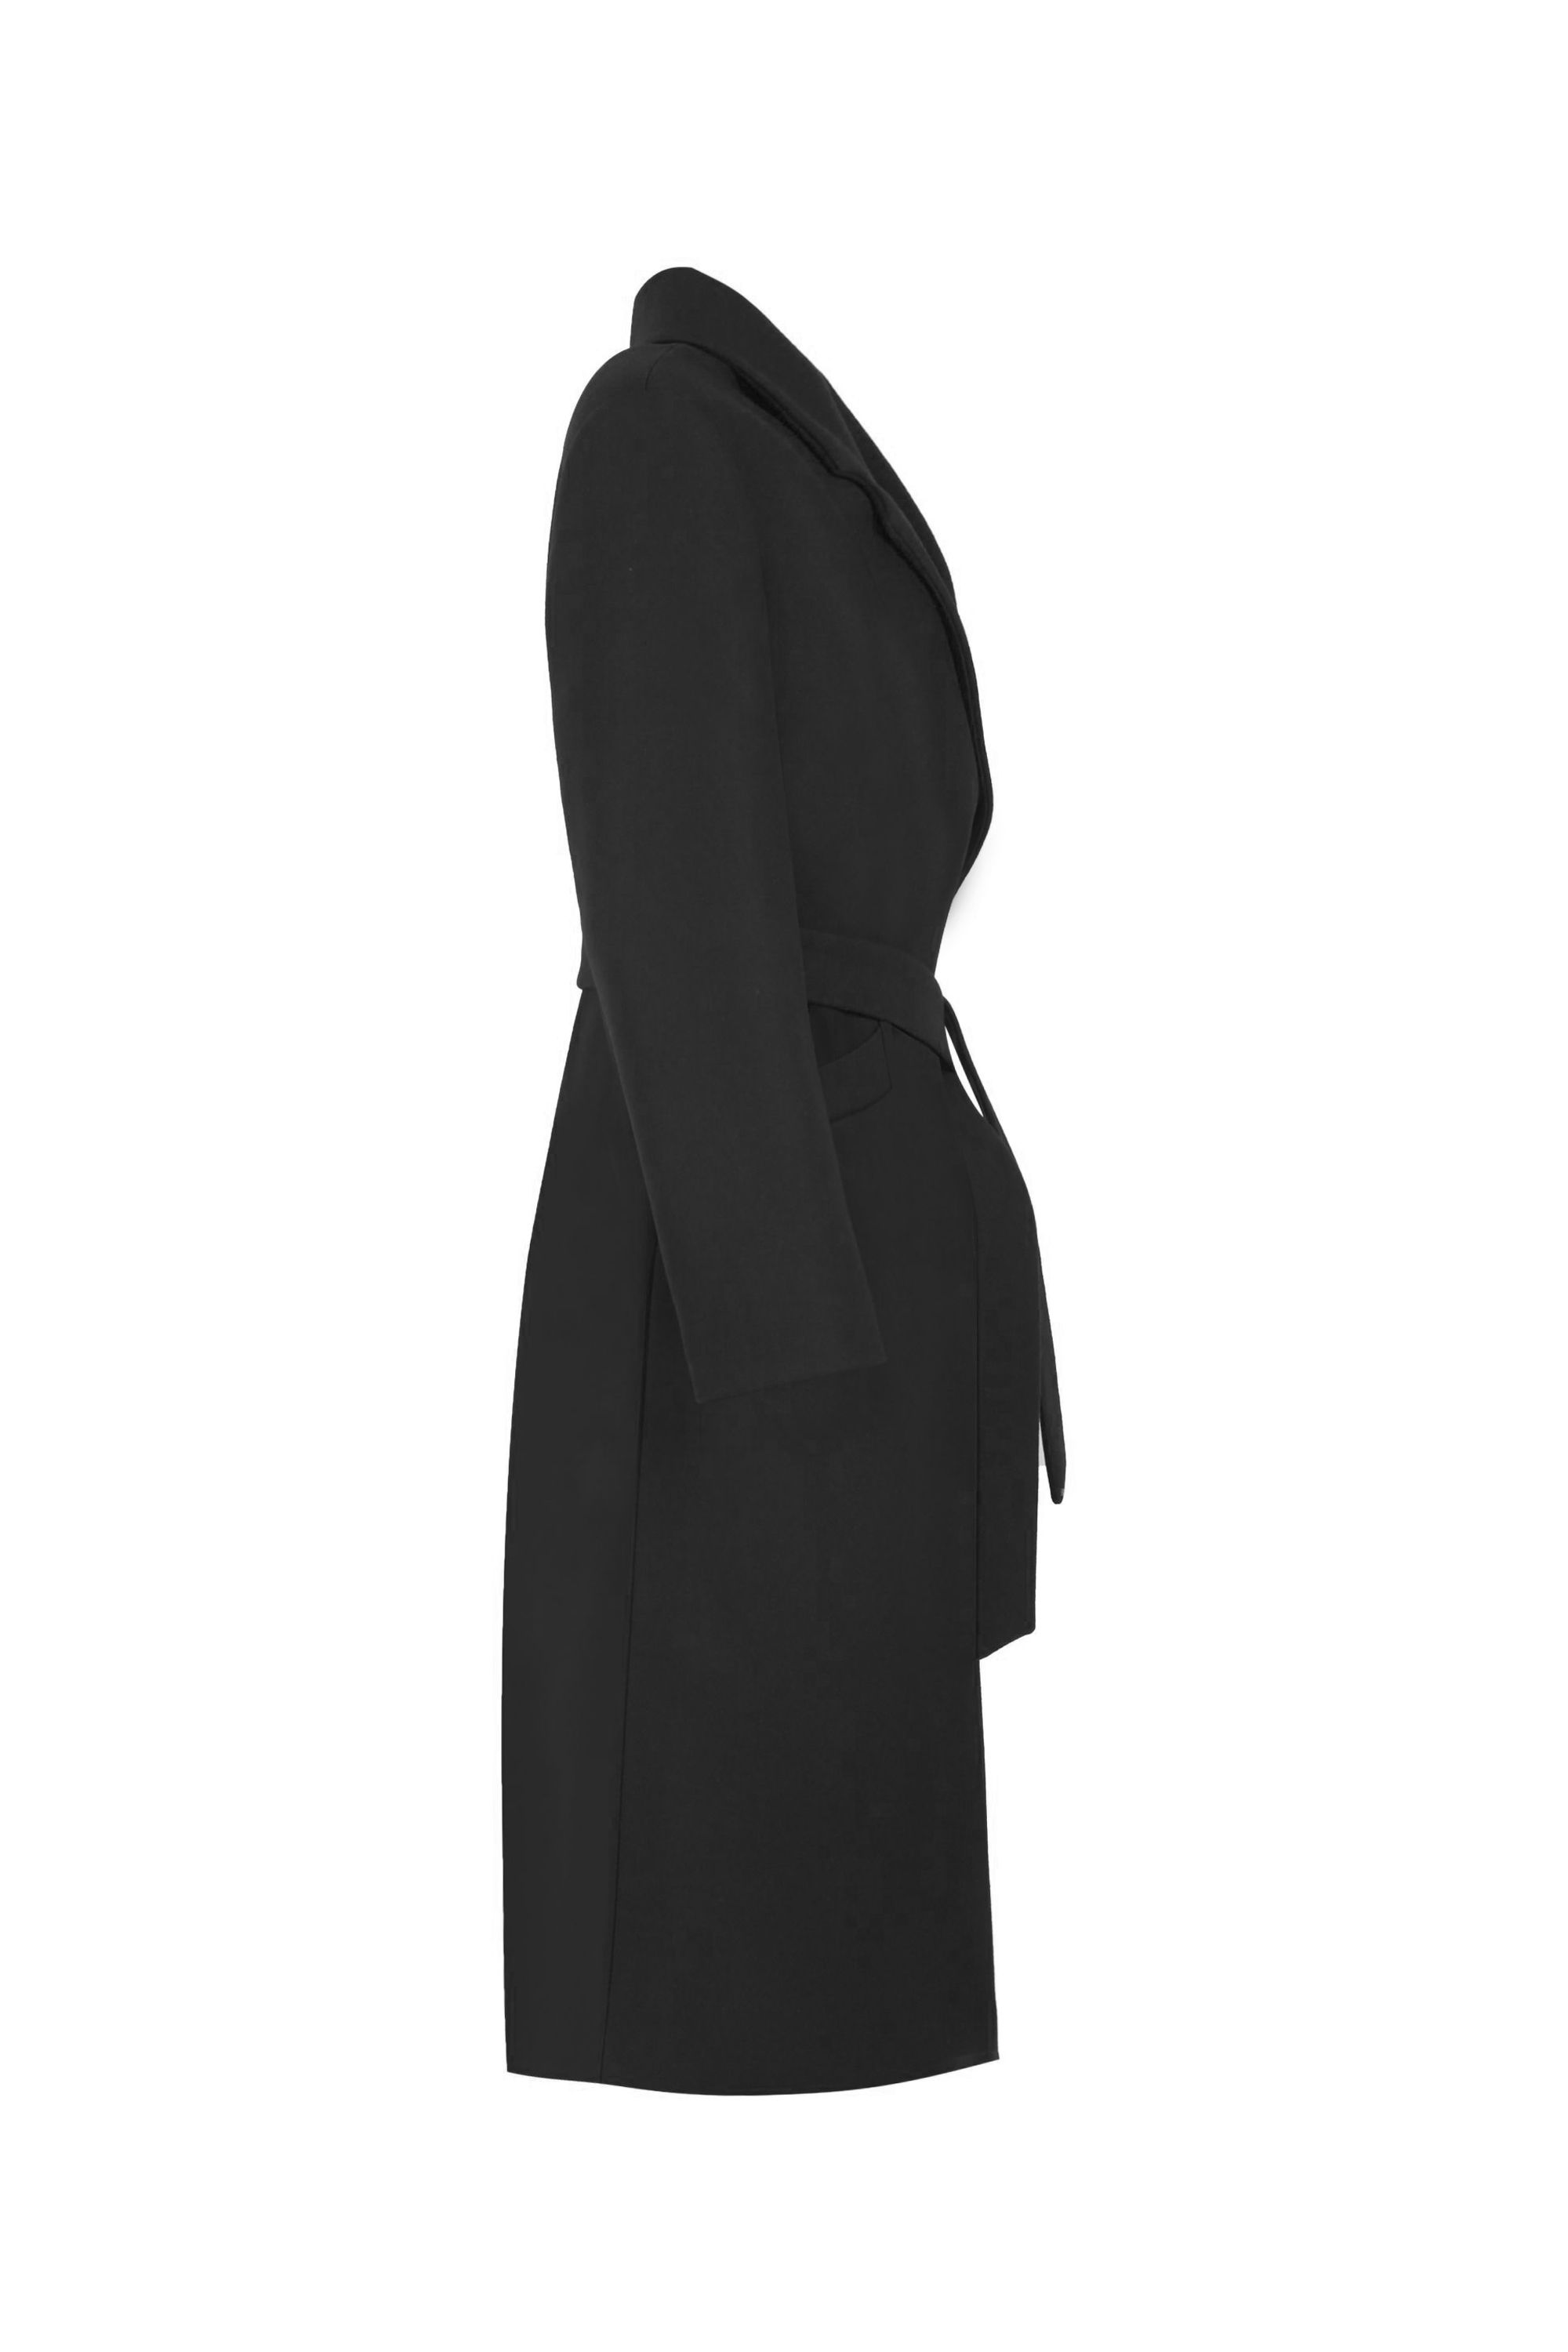 Пальто женское демисезонное 1-12253-1. Фото 2.